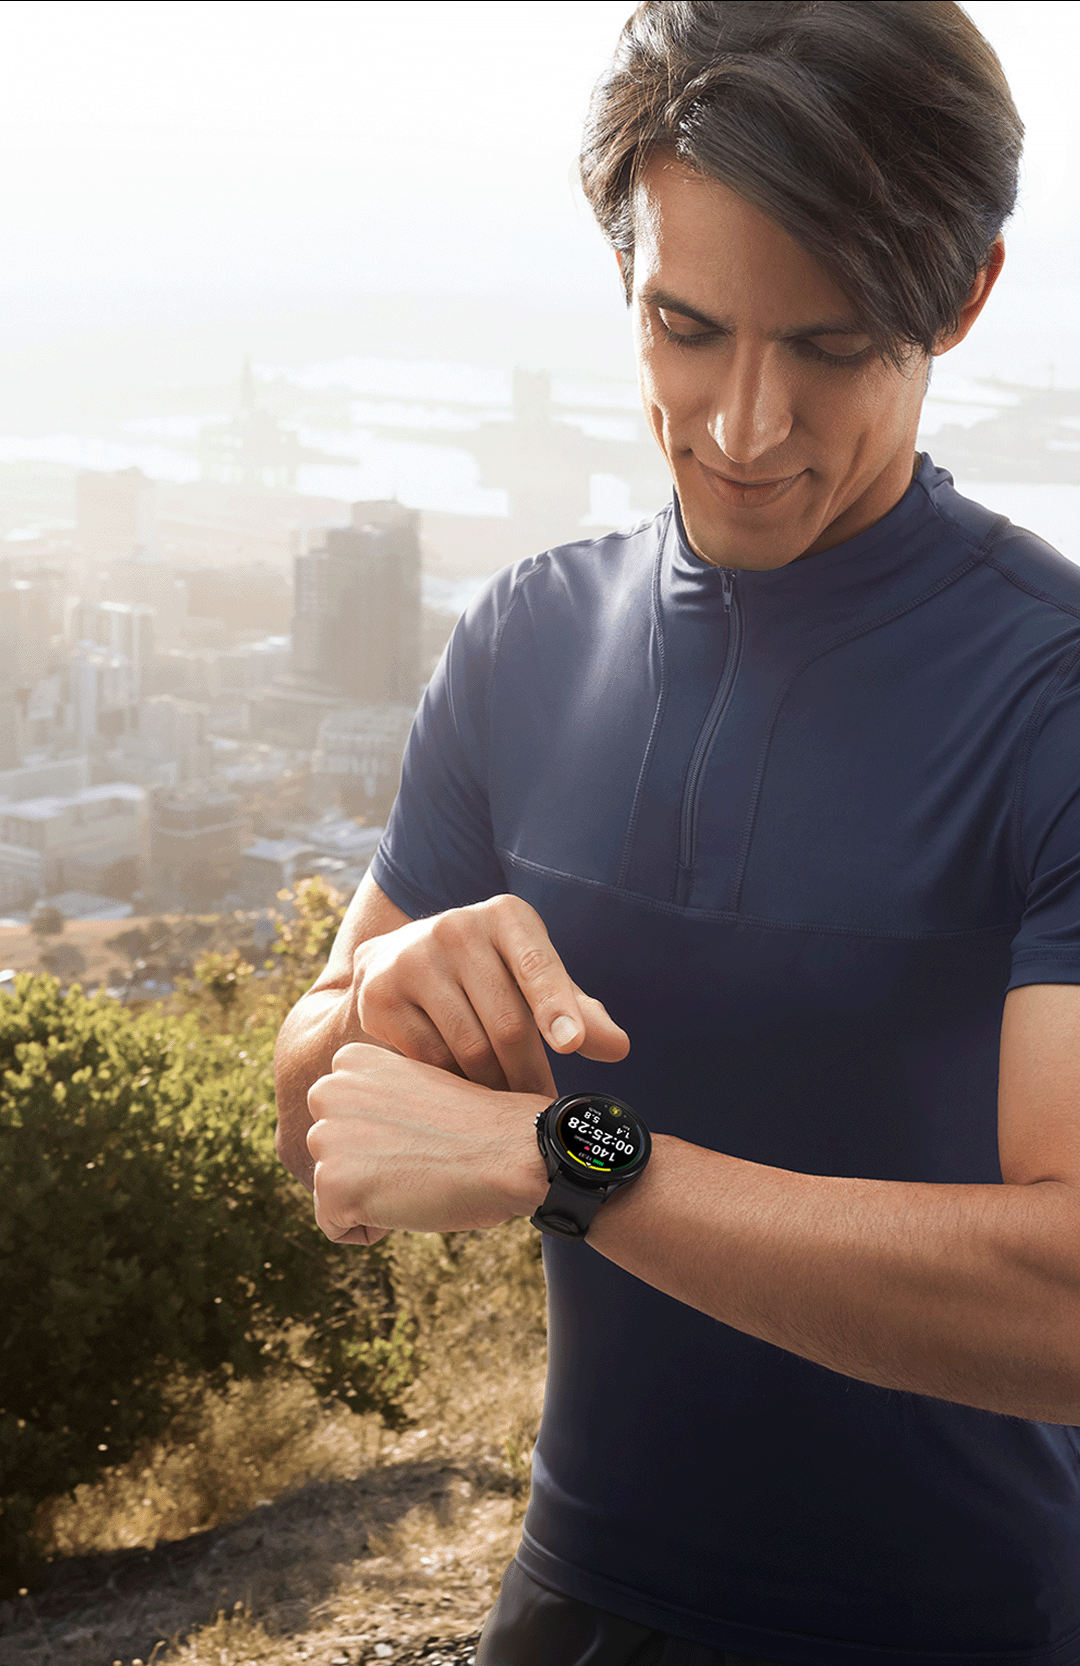 Xiaomi Watch 2 Pro 4G LTE Silver con Correa de Piel marrón, Plata, Talla  única : : Electrónica